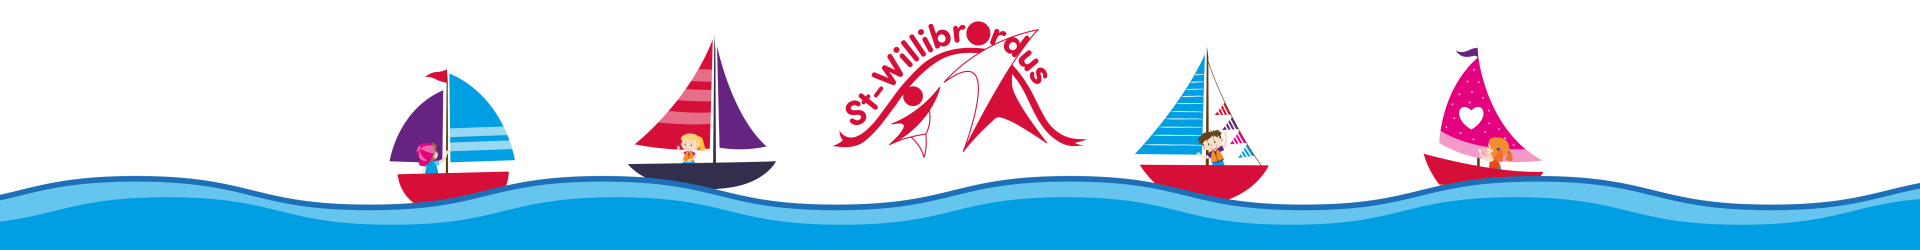 St-Willibrordus